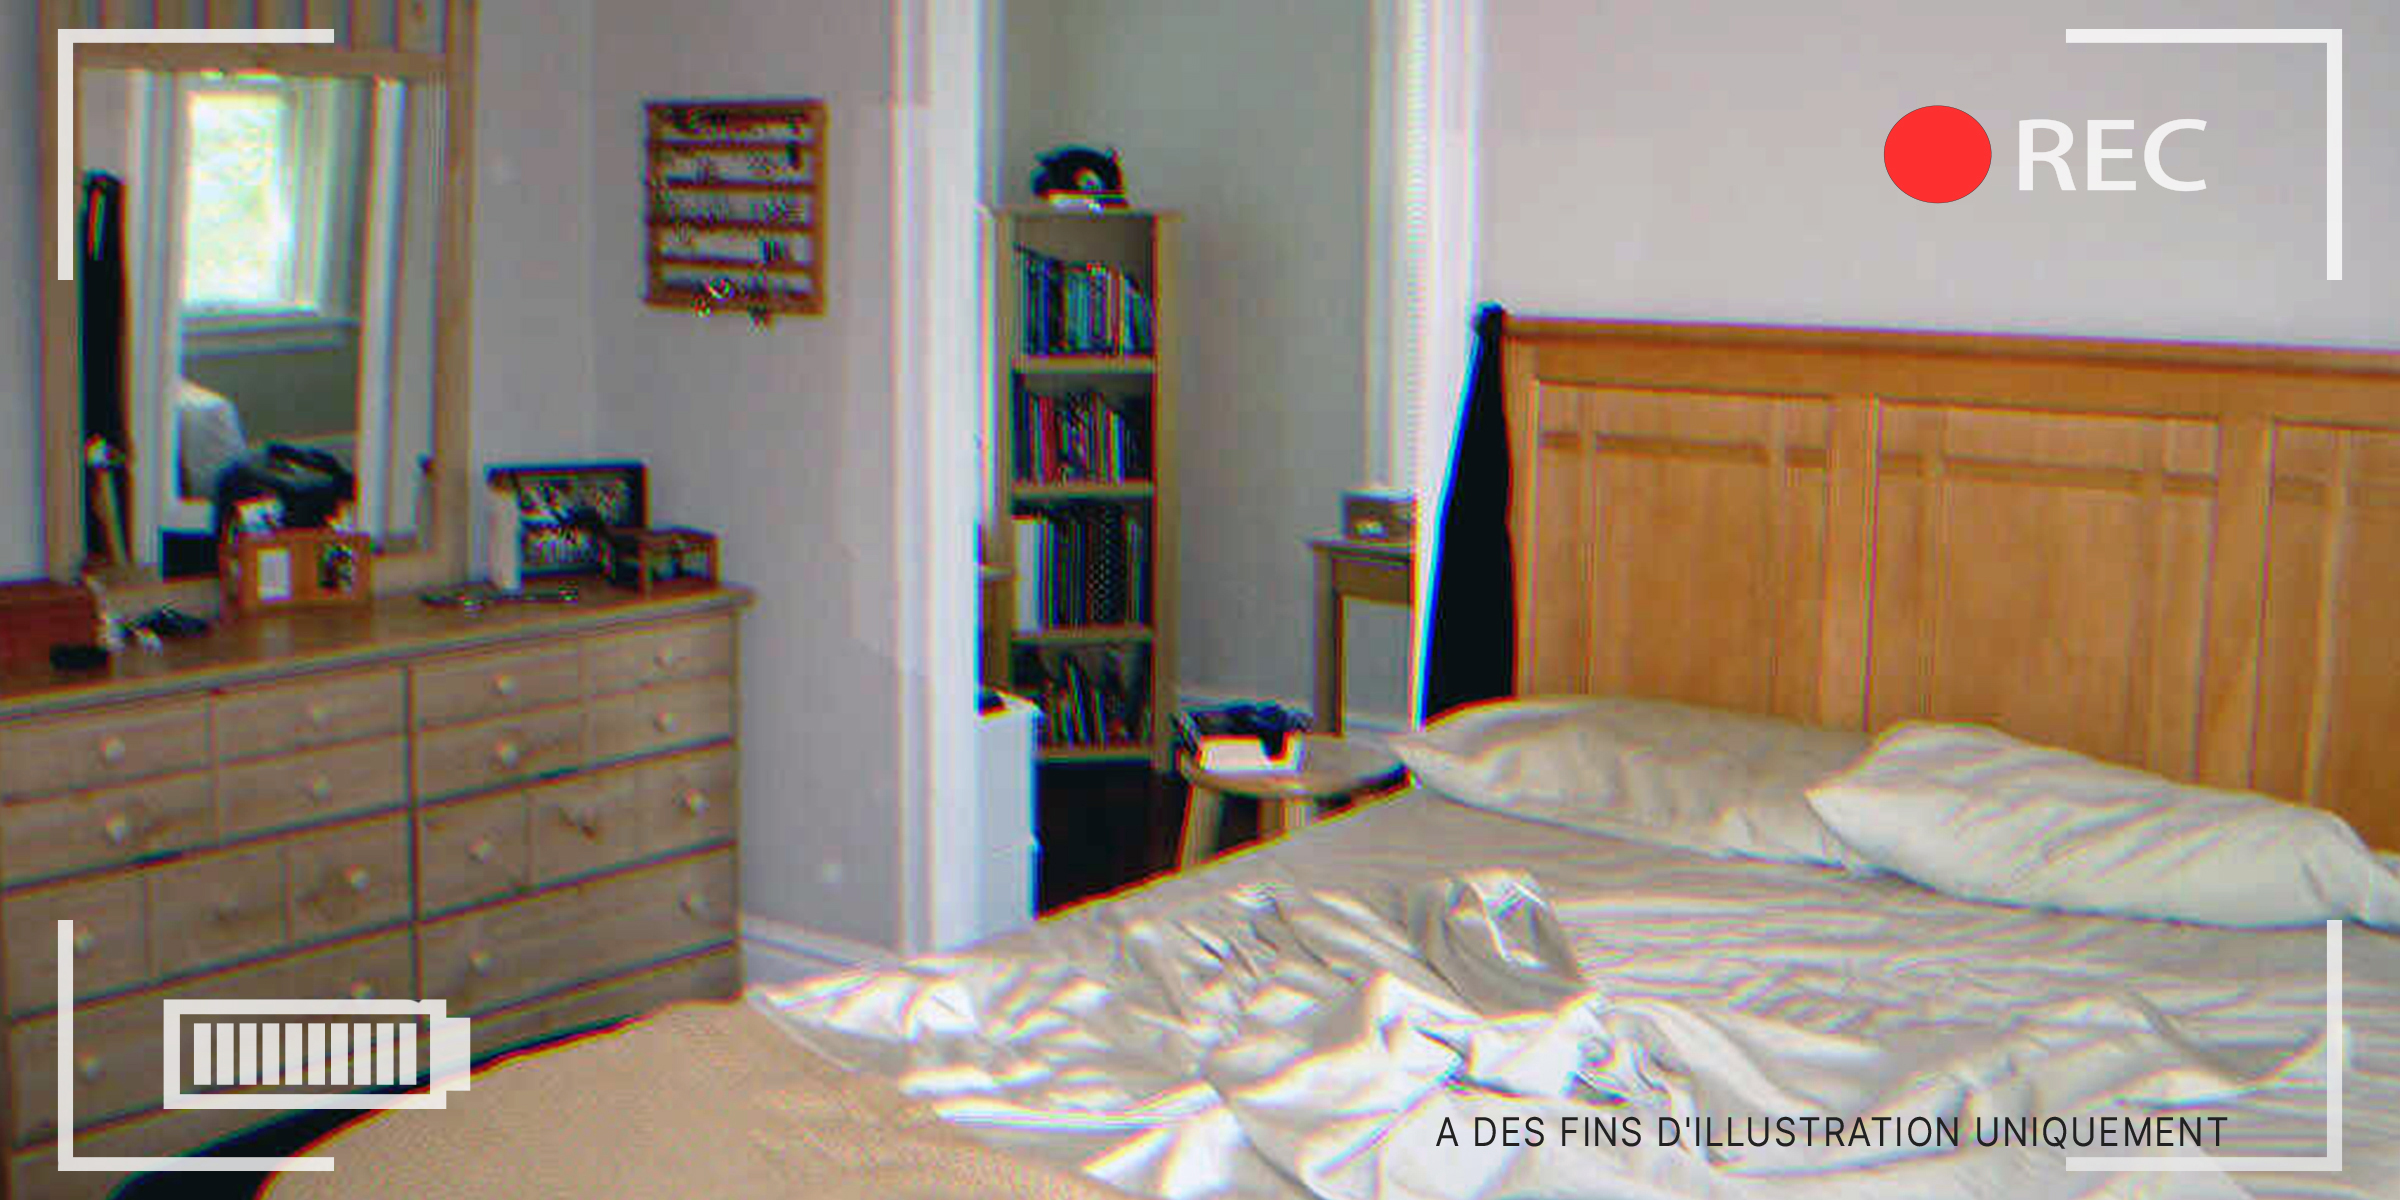 Une caméra de vidéosurveillance dans une chambre à coucher Source : flickr.com/TFDuesing/CC BY 2.0